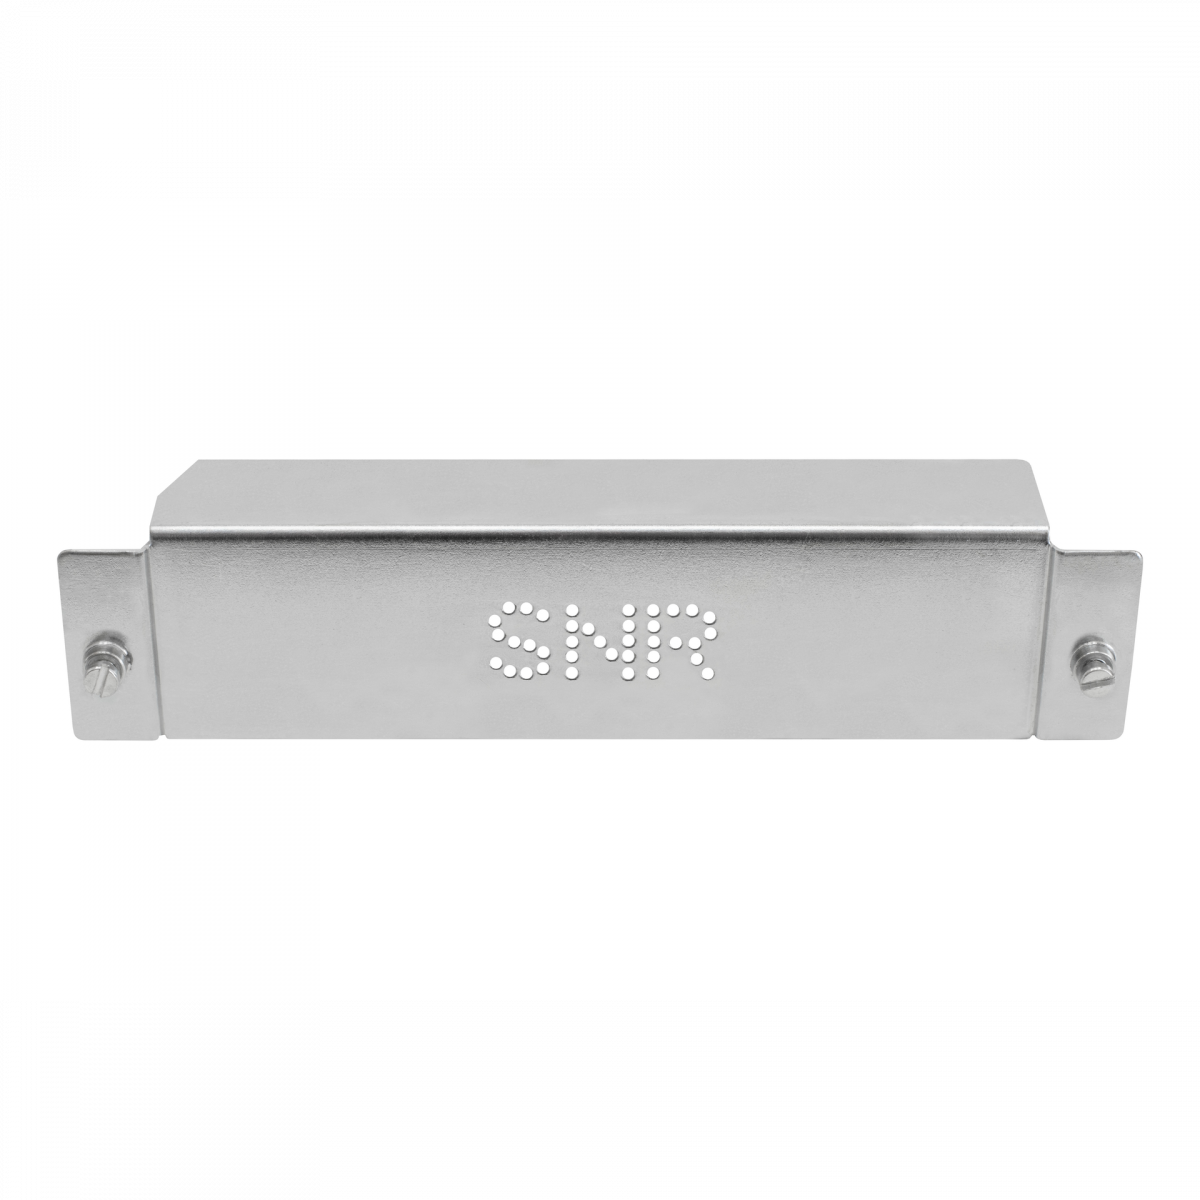 Заглушка SNR-BLNK-ASA5500-Z (гальваническое покрытие) для модуля расширения ASA5500 серии